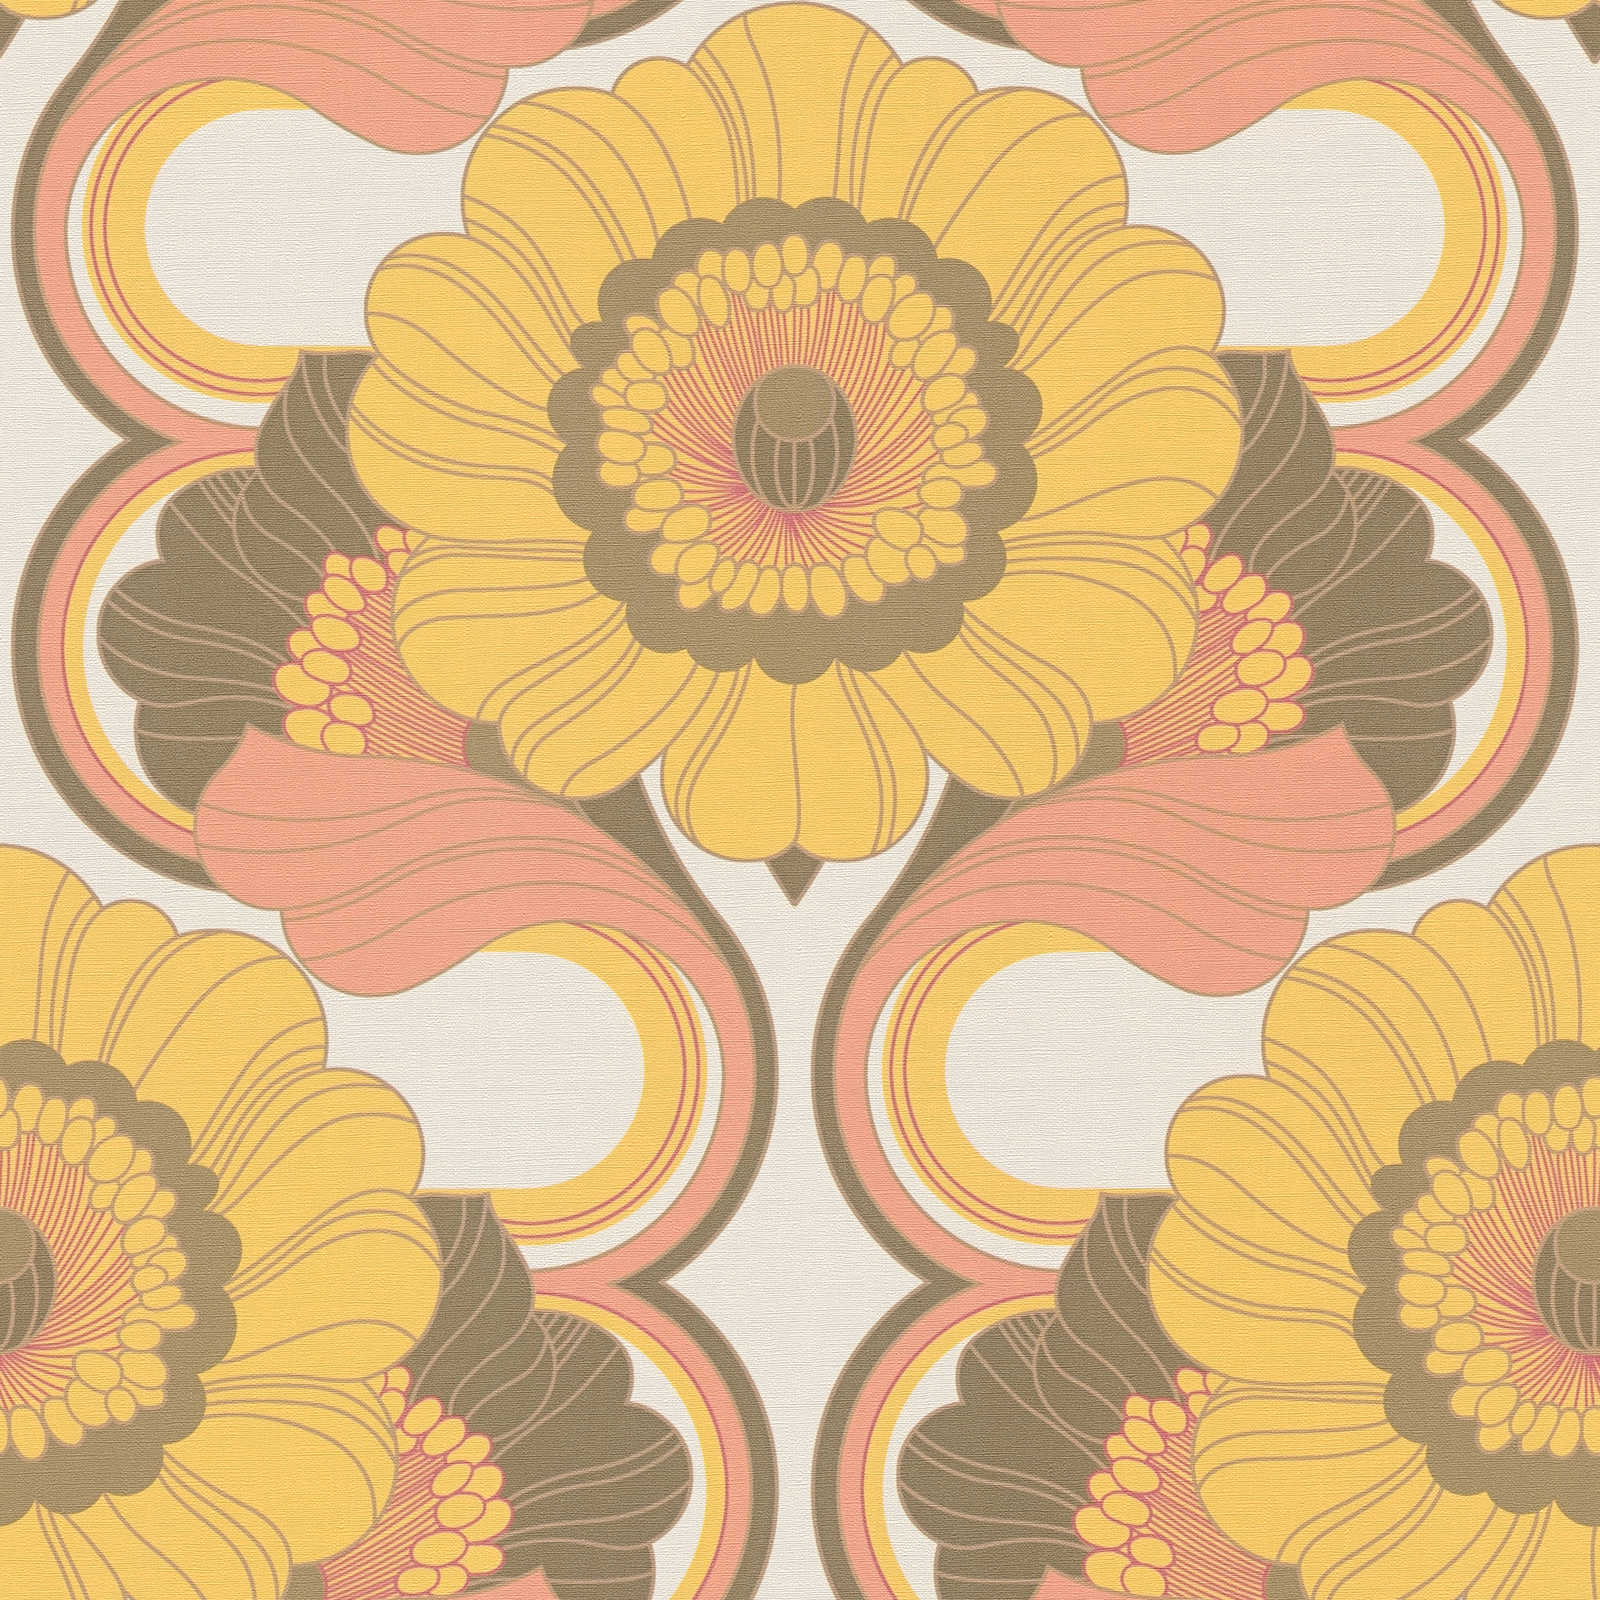 Floraal retro behang met bloemenpatroon in warme kleuren - bruin, geel, oranje
